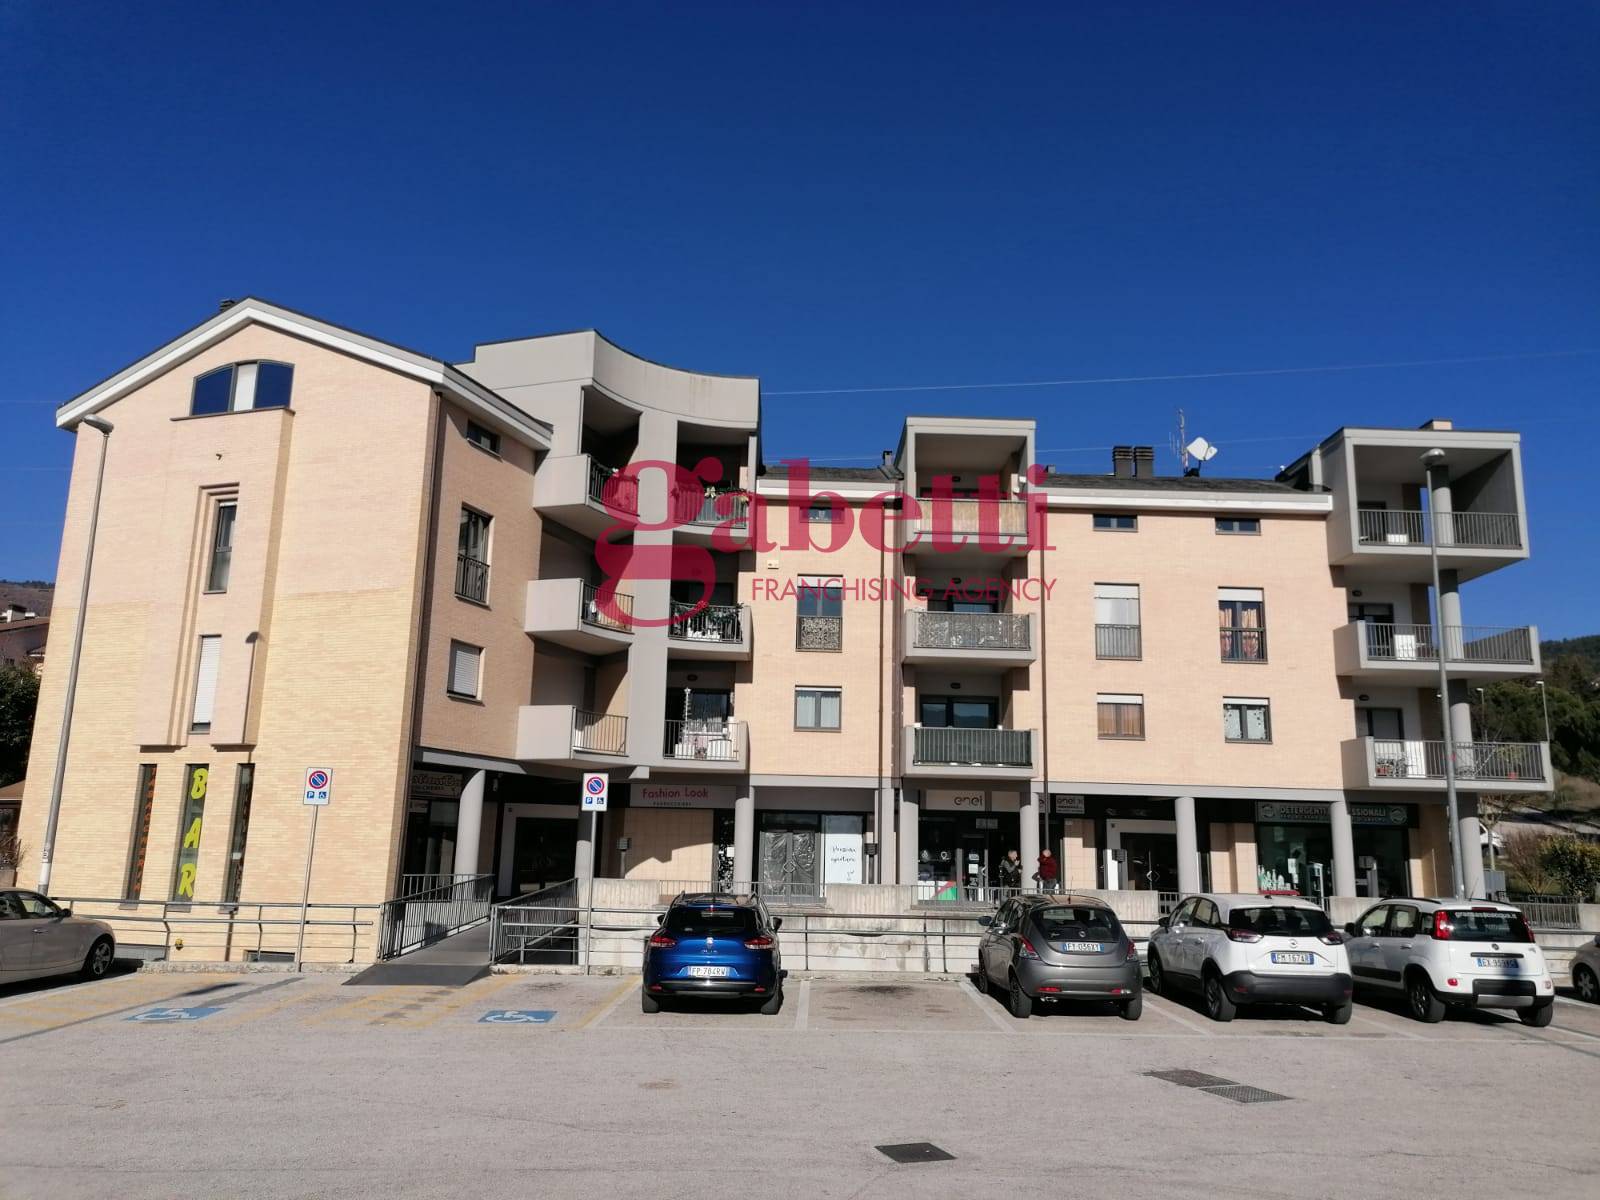 Appartamento in affitto a L'Aquila, 2 locali, zona Località: CollePretara, prezzo € 450 | CambioCasa.it